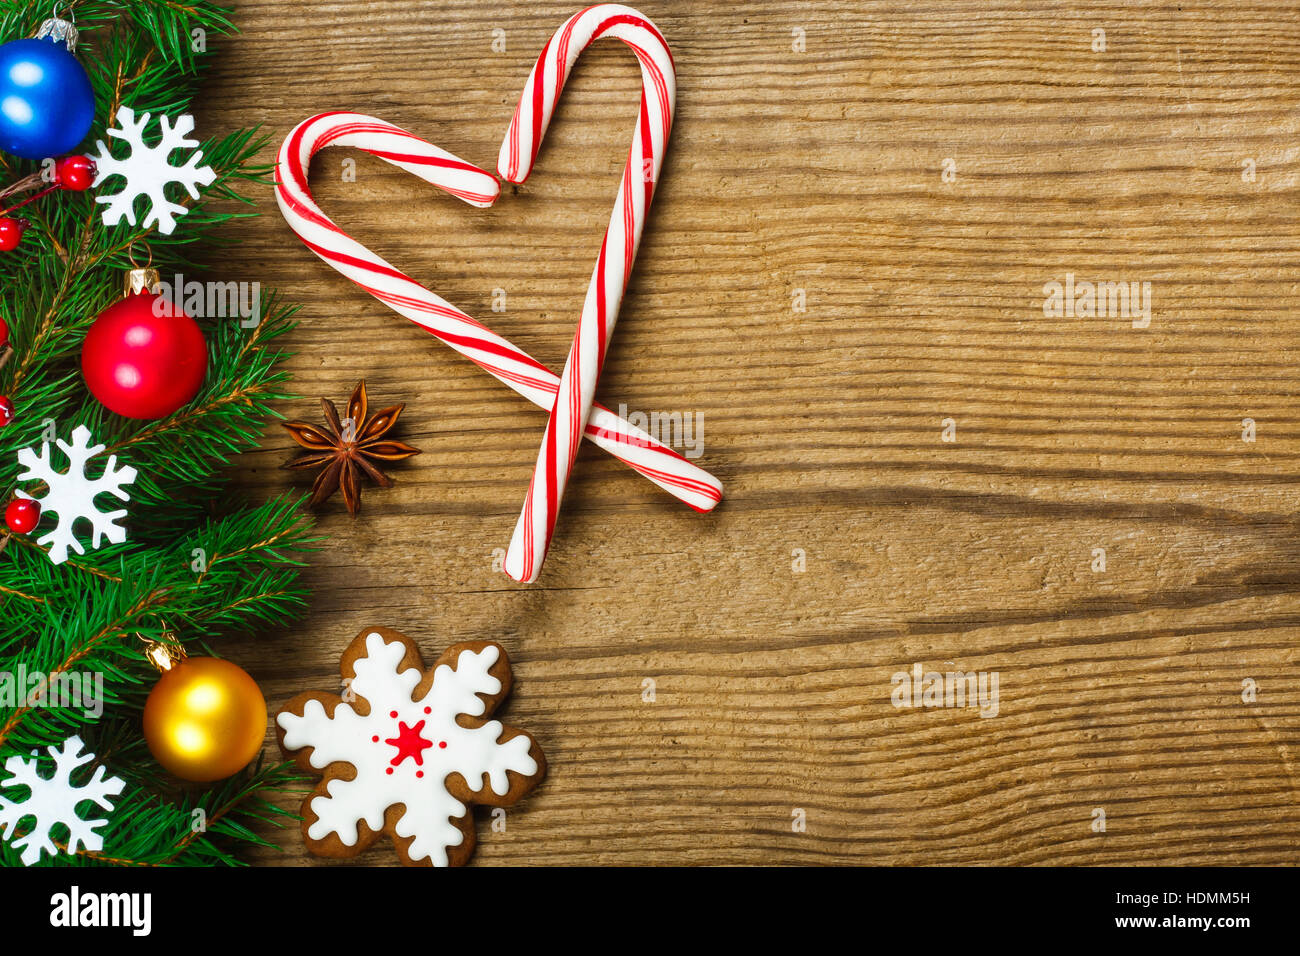 Weihnachten Hintergrund - Weihnachtsschmuck auf Holztisch Stockfoto